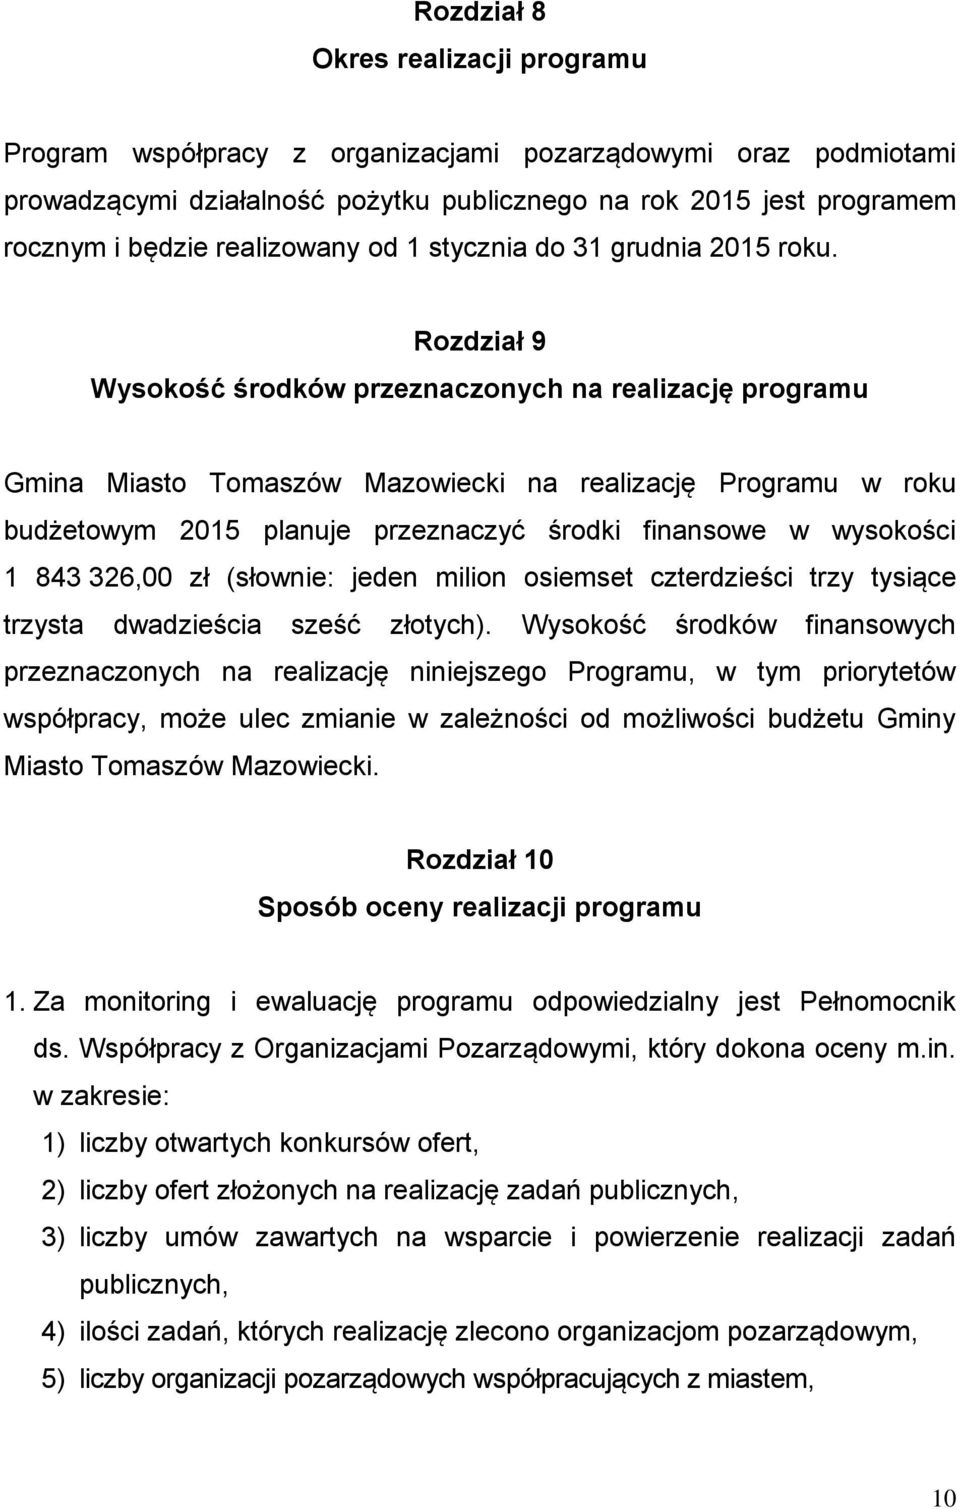 Rozdział 9 Wysokość środków przeznaczonych na realizację programu Gmina Miasto Tomaszów Mazowiecki na realizację Programu w roku budżetowym 2015 planuje przeznaczyć środki finansowe w wysokości 1 843